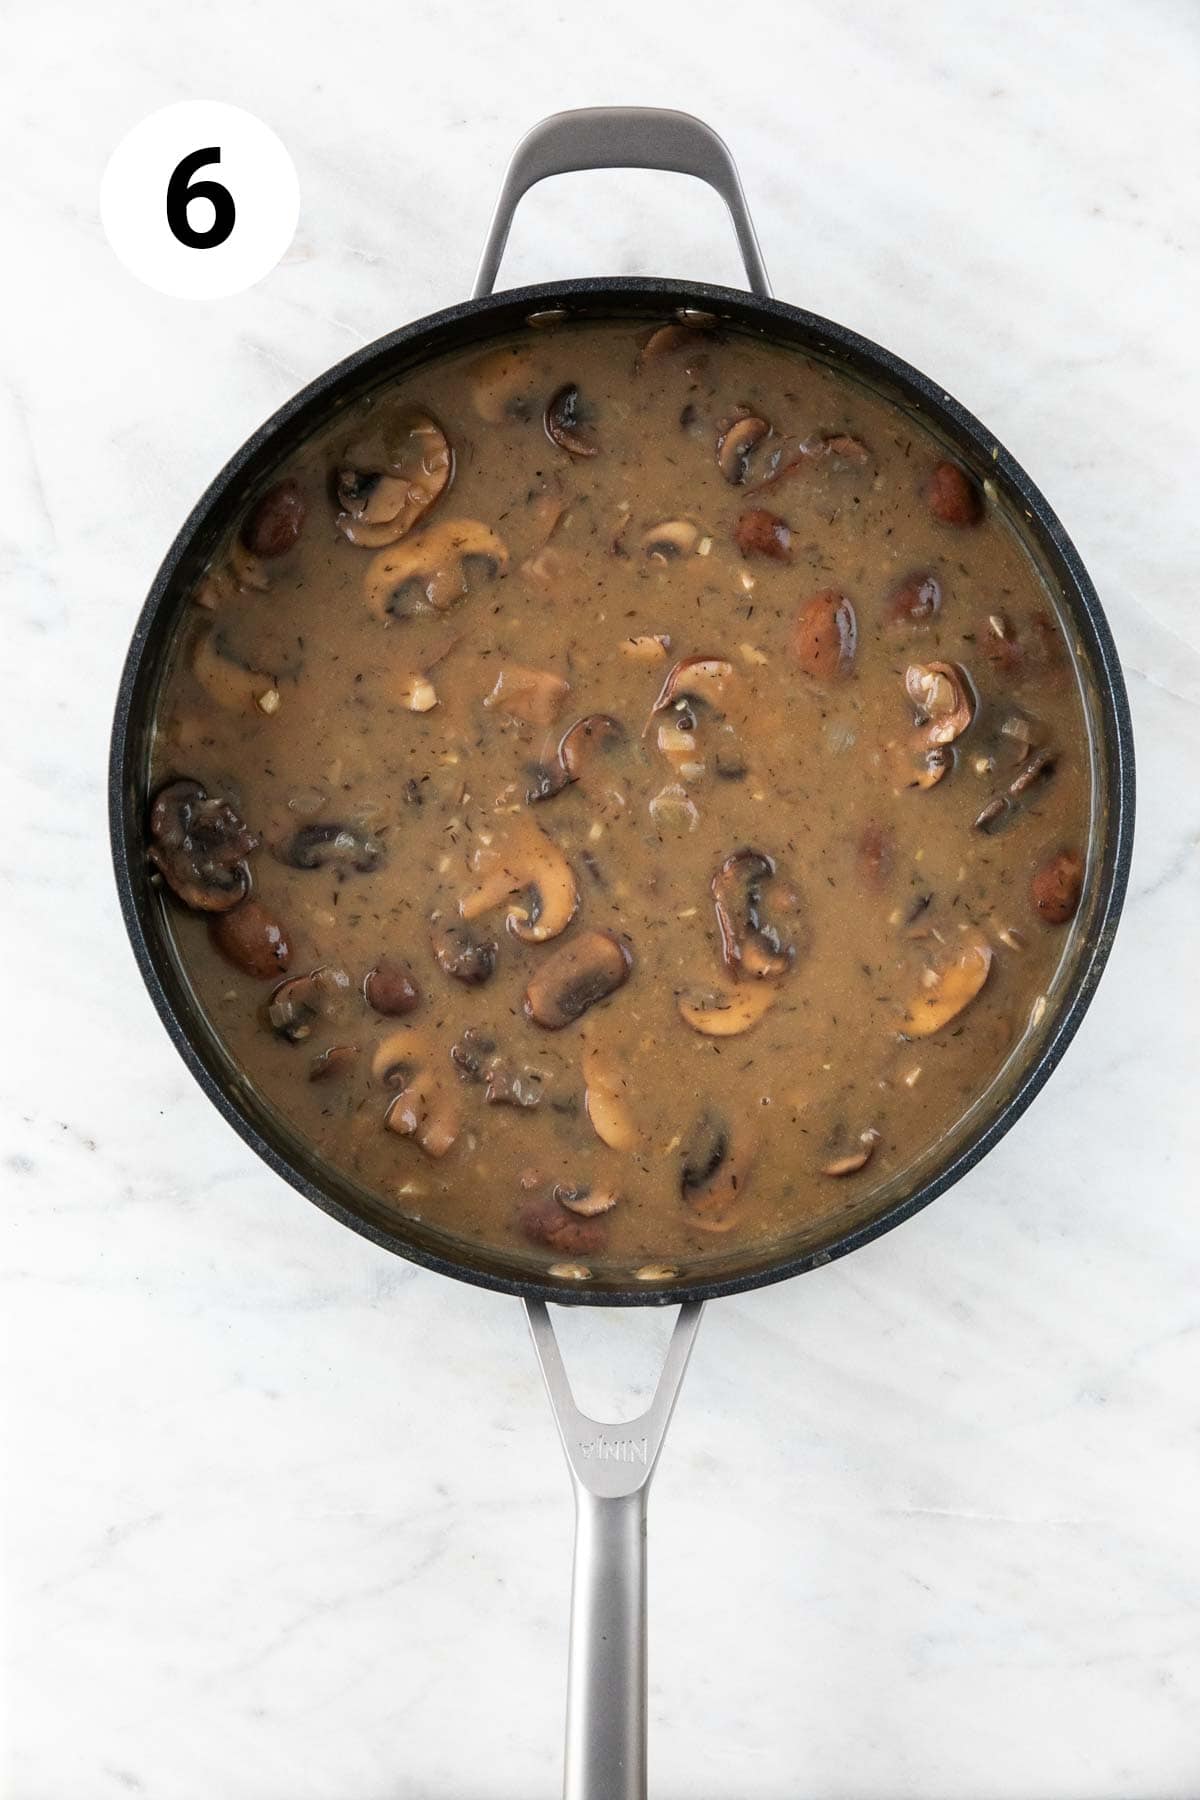 Vegan mushroom gravy in a skillet.